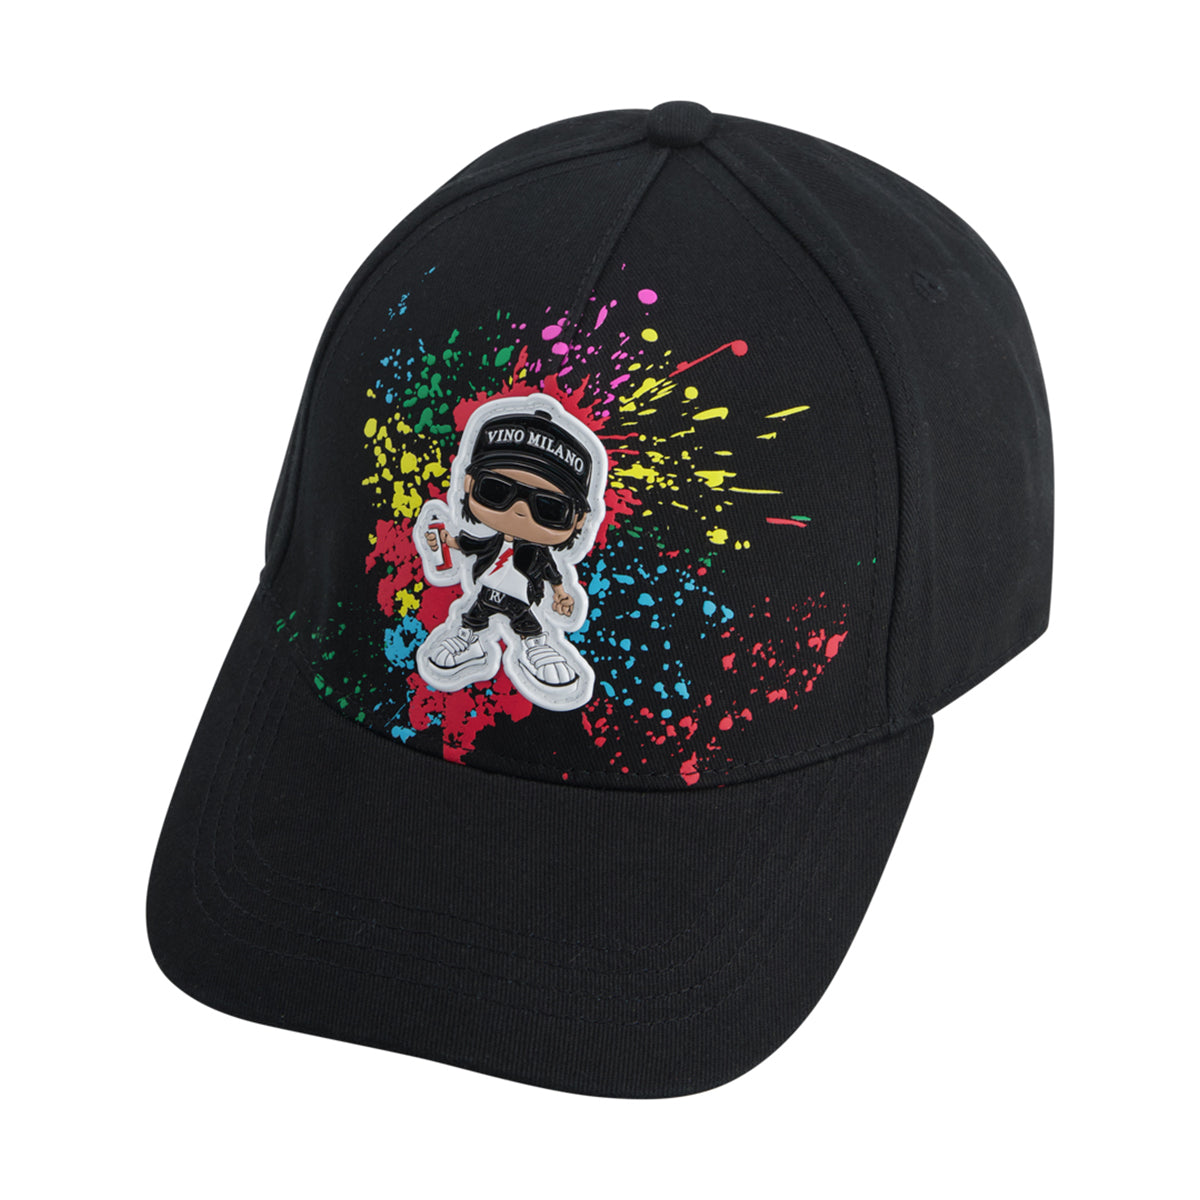 כובע מצחייה ROBERTO VINO זריקות צבע לילדים